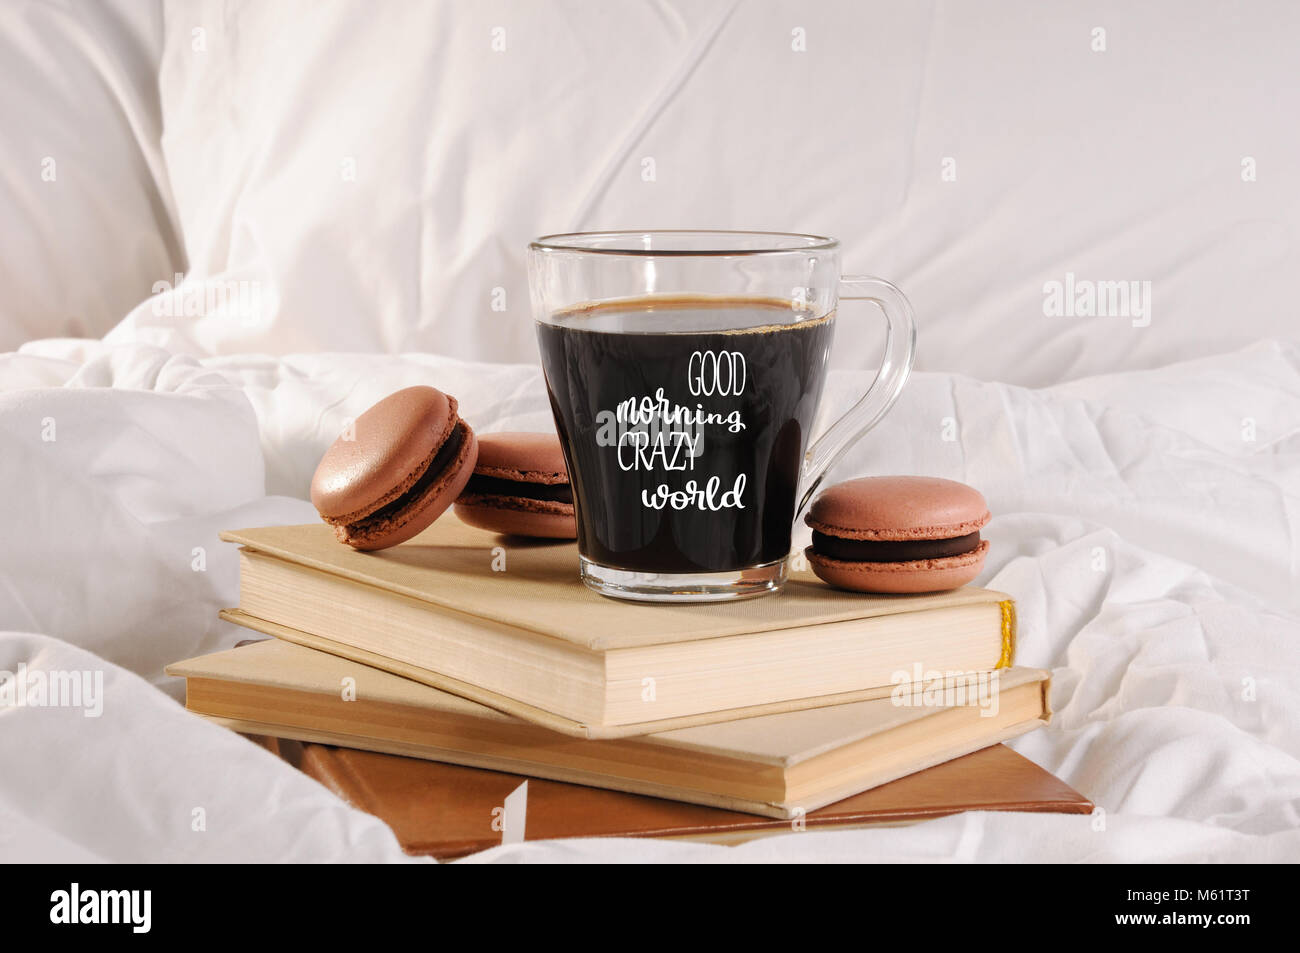 Tasse de café du matin avec les gâteaux au chocolat macarons, sur une pile de livres dans le lit. L'inscription sur la coupe est "bon matin monde fou". Banque D'Images